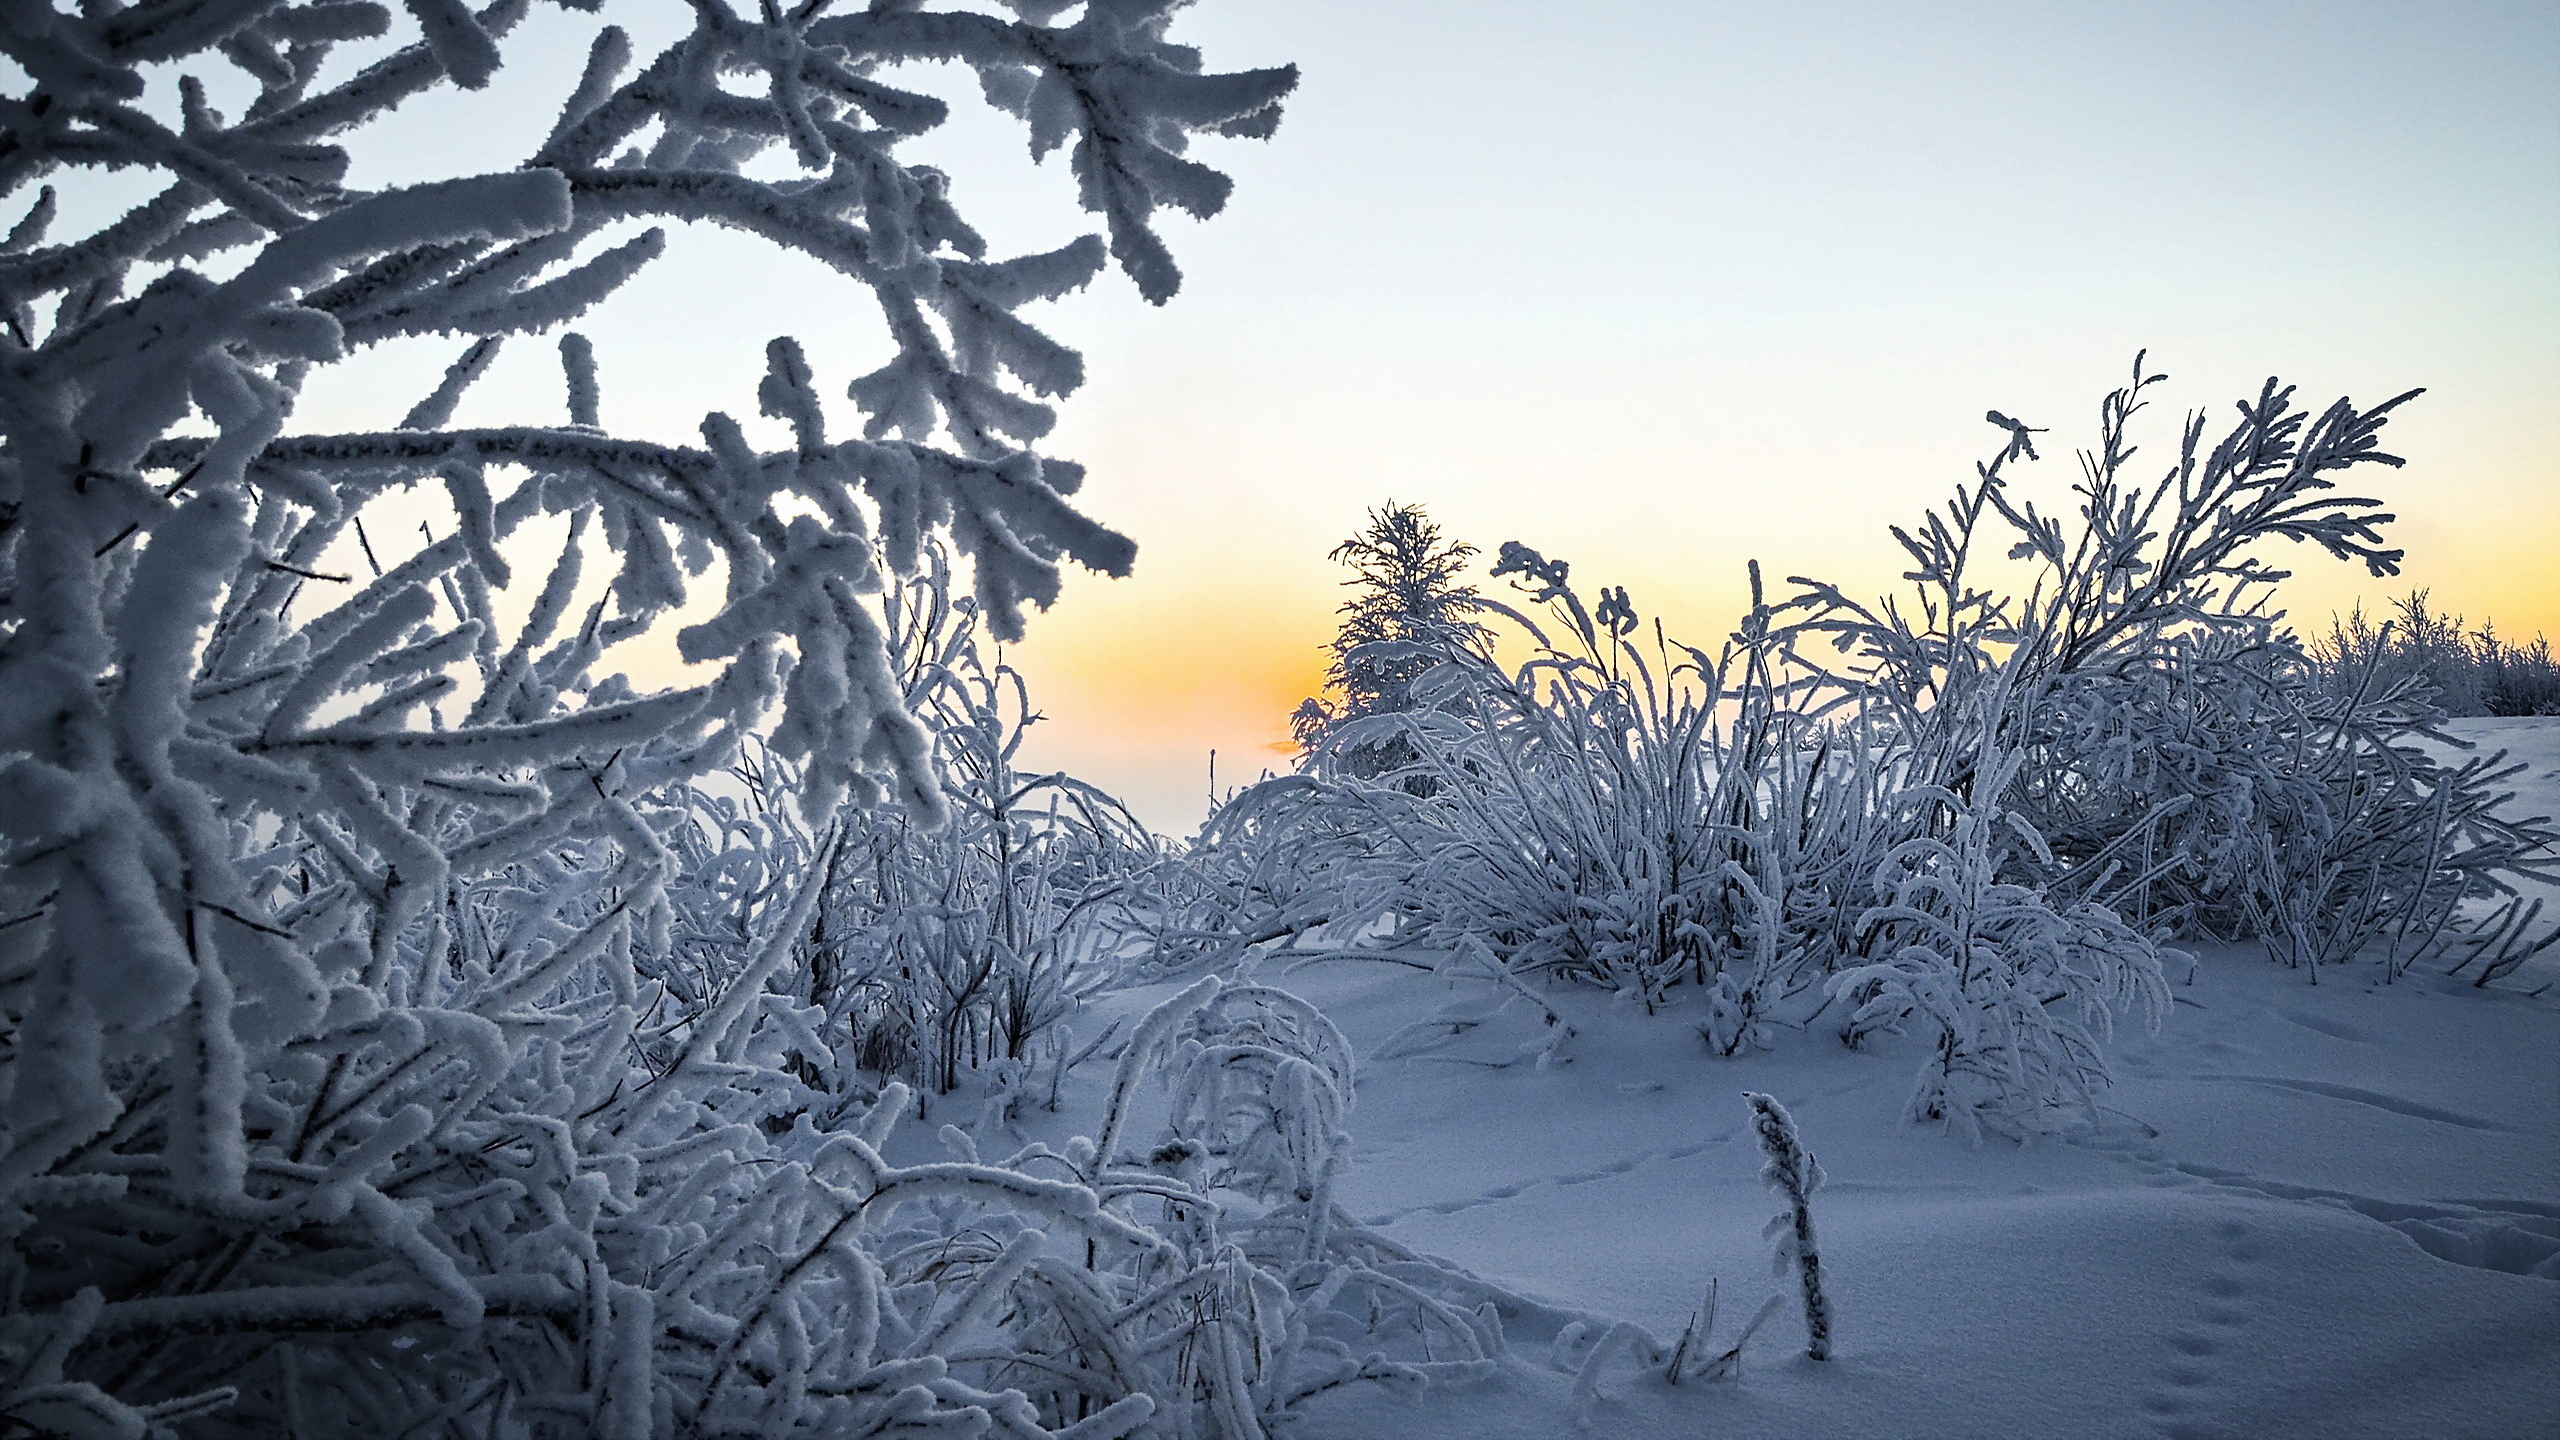 눈내린 겨울풍경 윈도우 고화질 배경화면과 바탕화면이미지 여기에 네이버 블로그